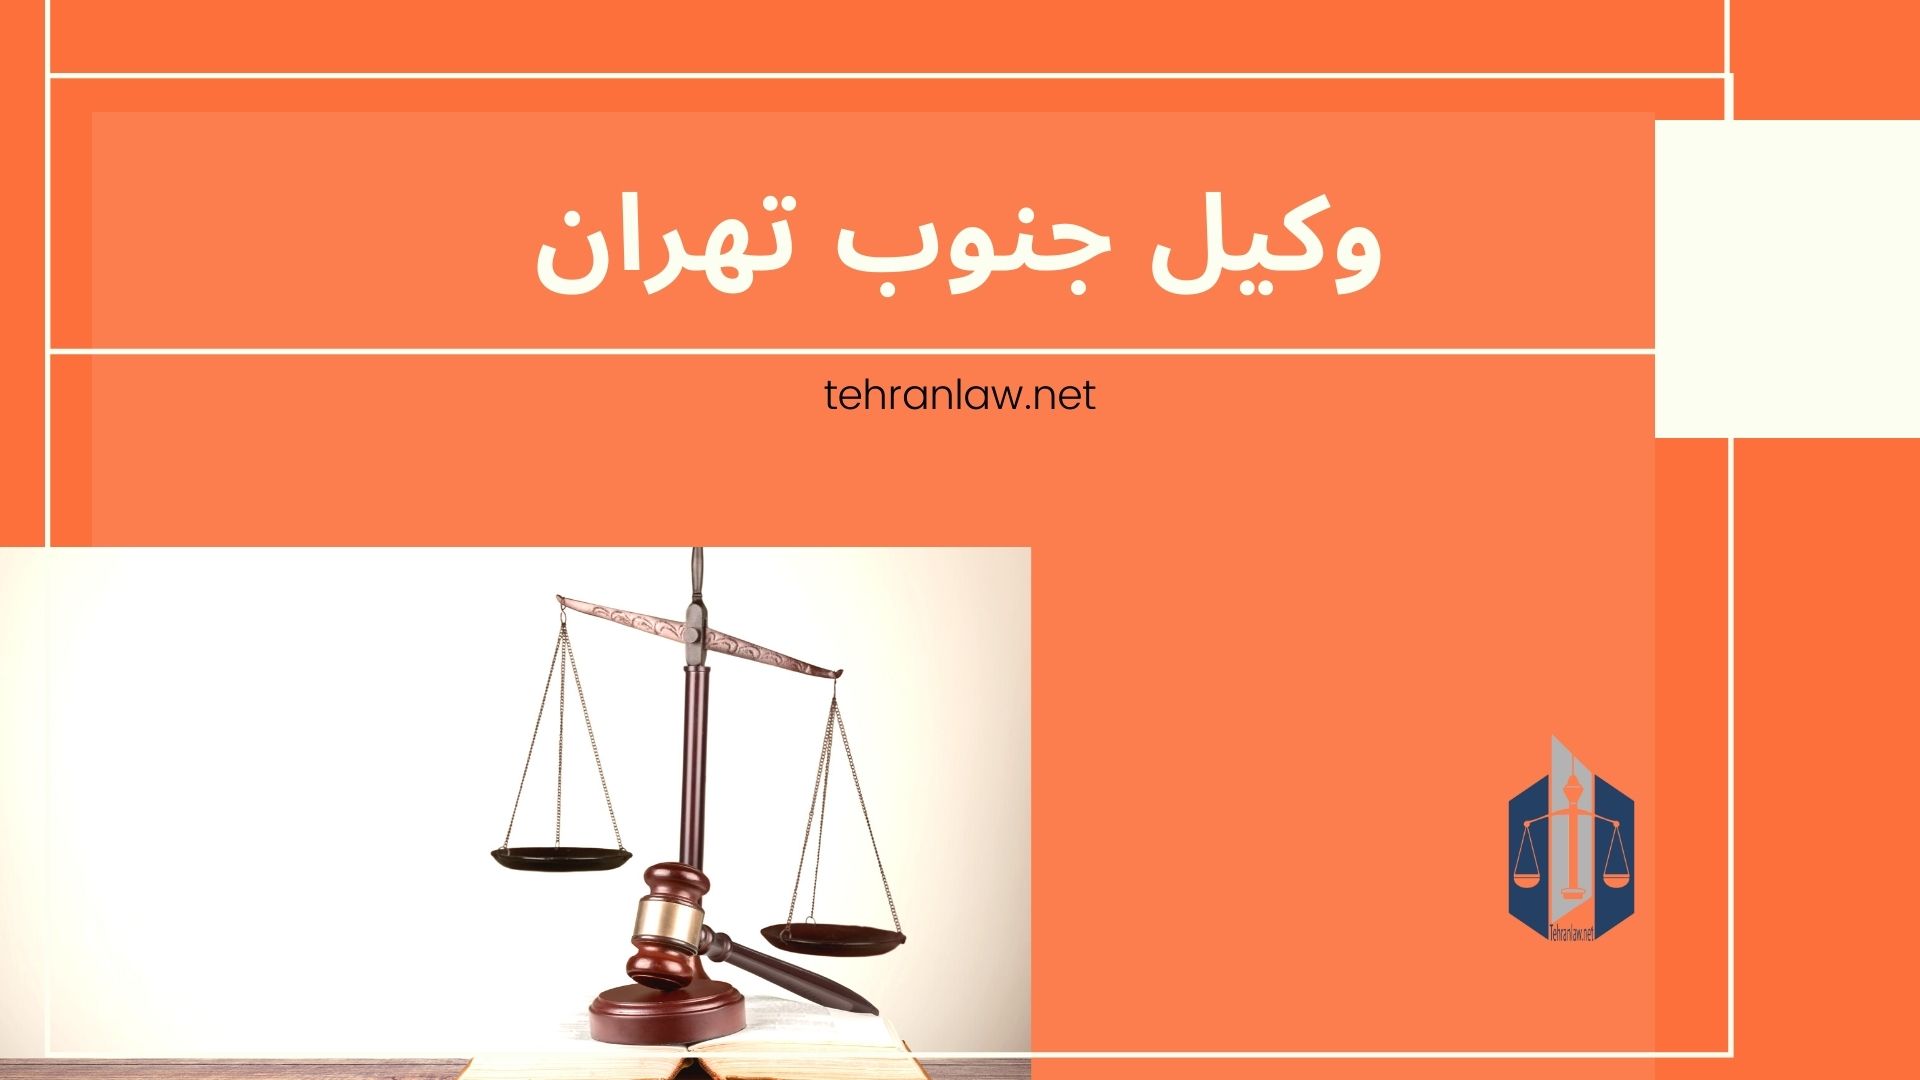 وکیل جنوب تهران